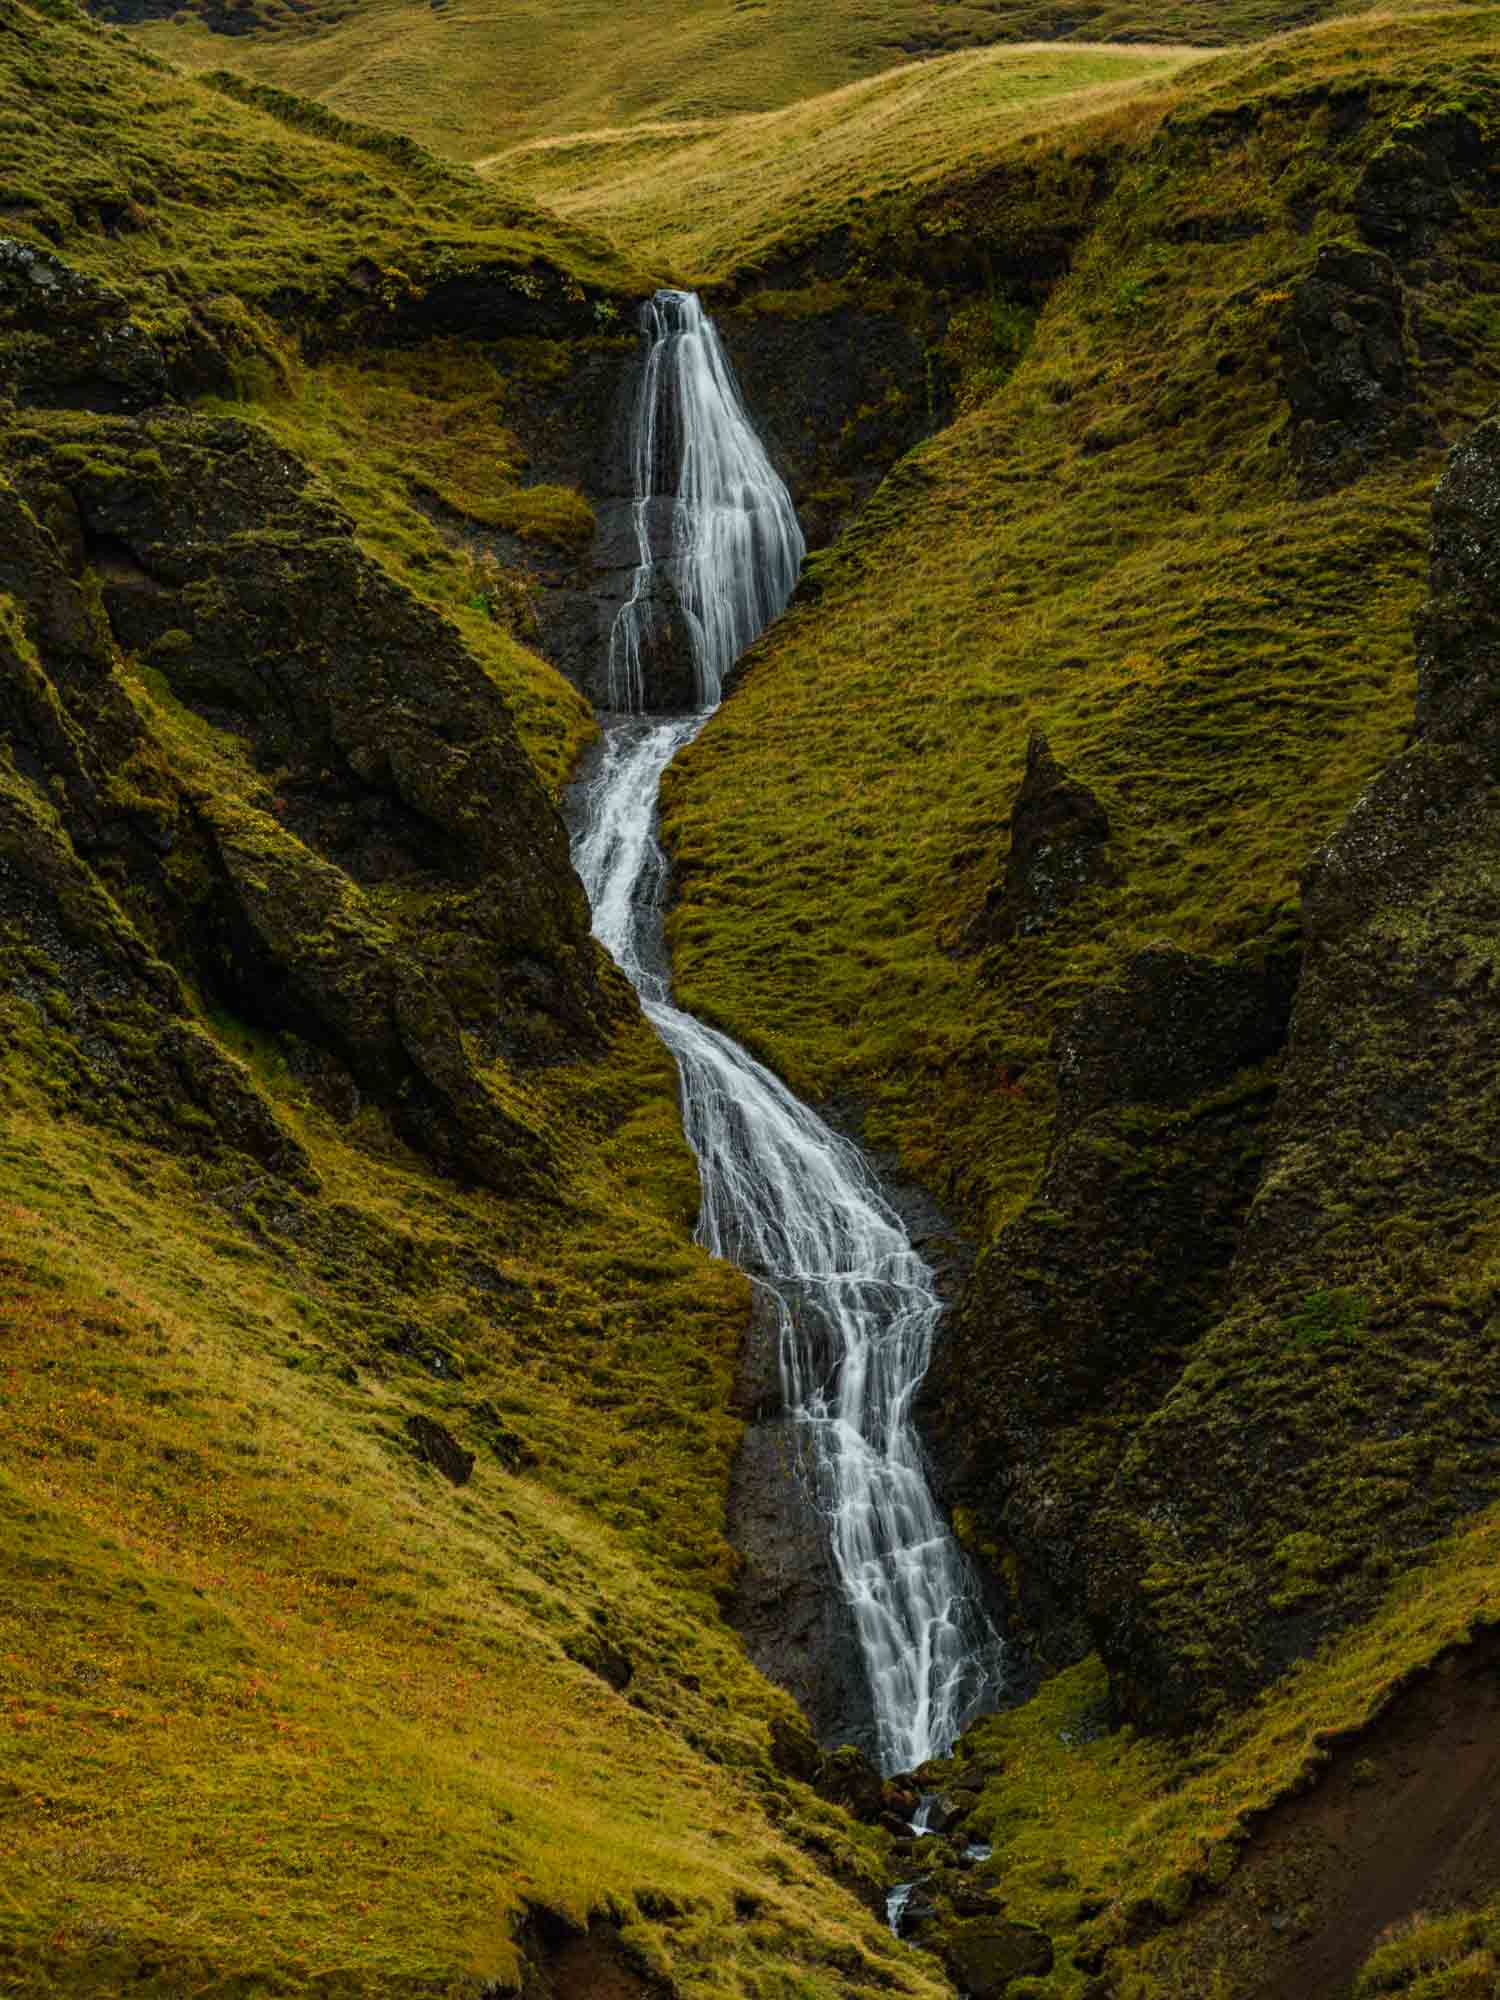 A hidden waterfall flows through the green, mossy cliffs of Fjaðrárgljúfur canyon in Iceland.